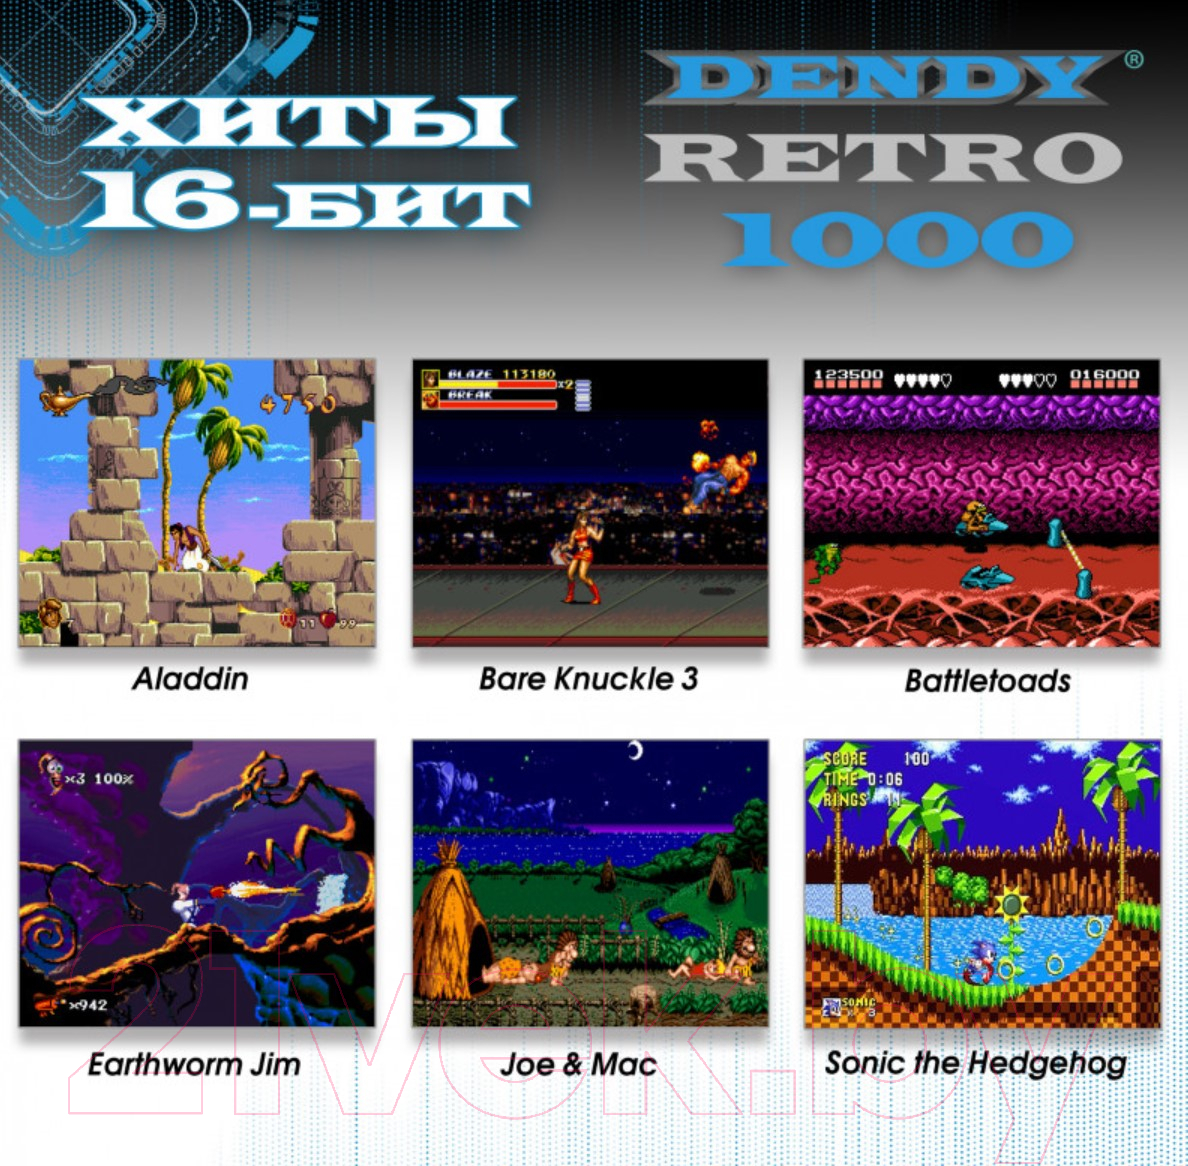 Игровая приставка Dendy Retro 1000 игр